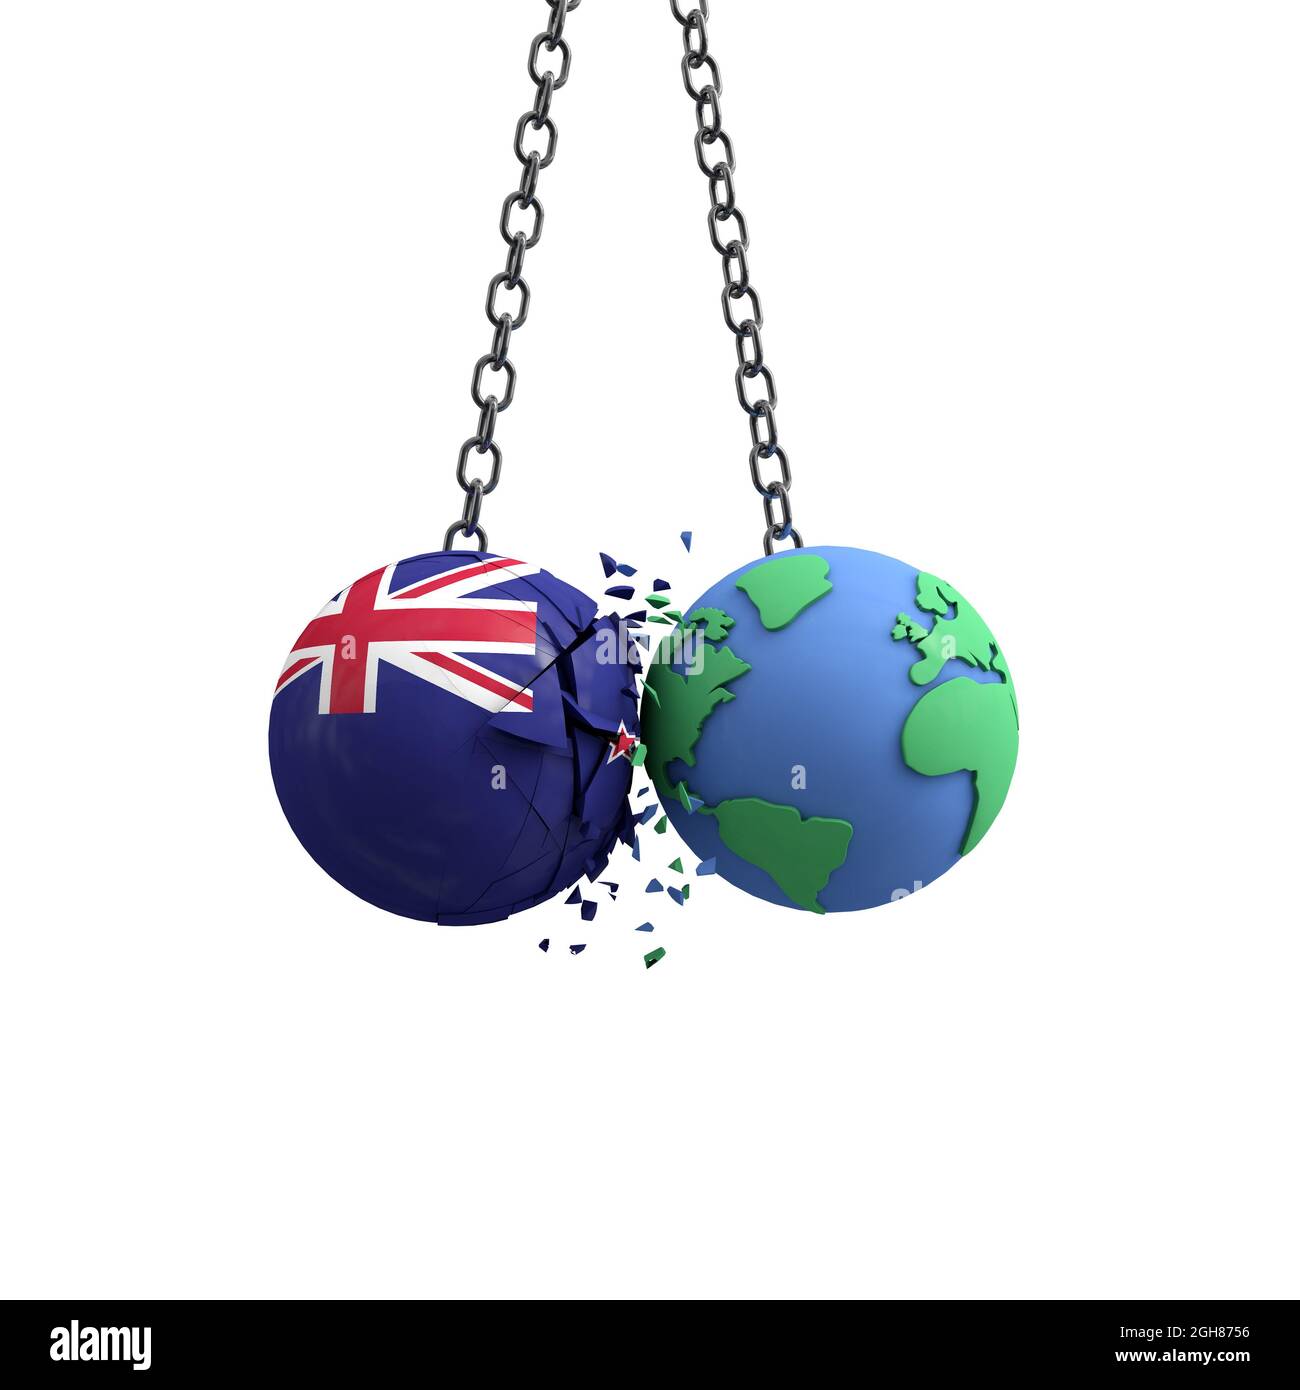 Le drapeau de la Nouvelle-Zélande frappe la planète Terre. Concept d'impact sur l'environnement. Rendu 3D Banque D'Images